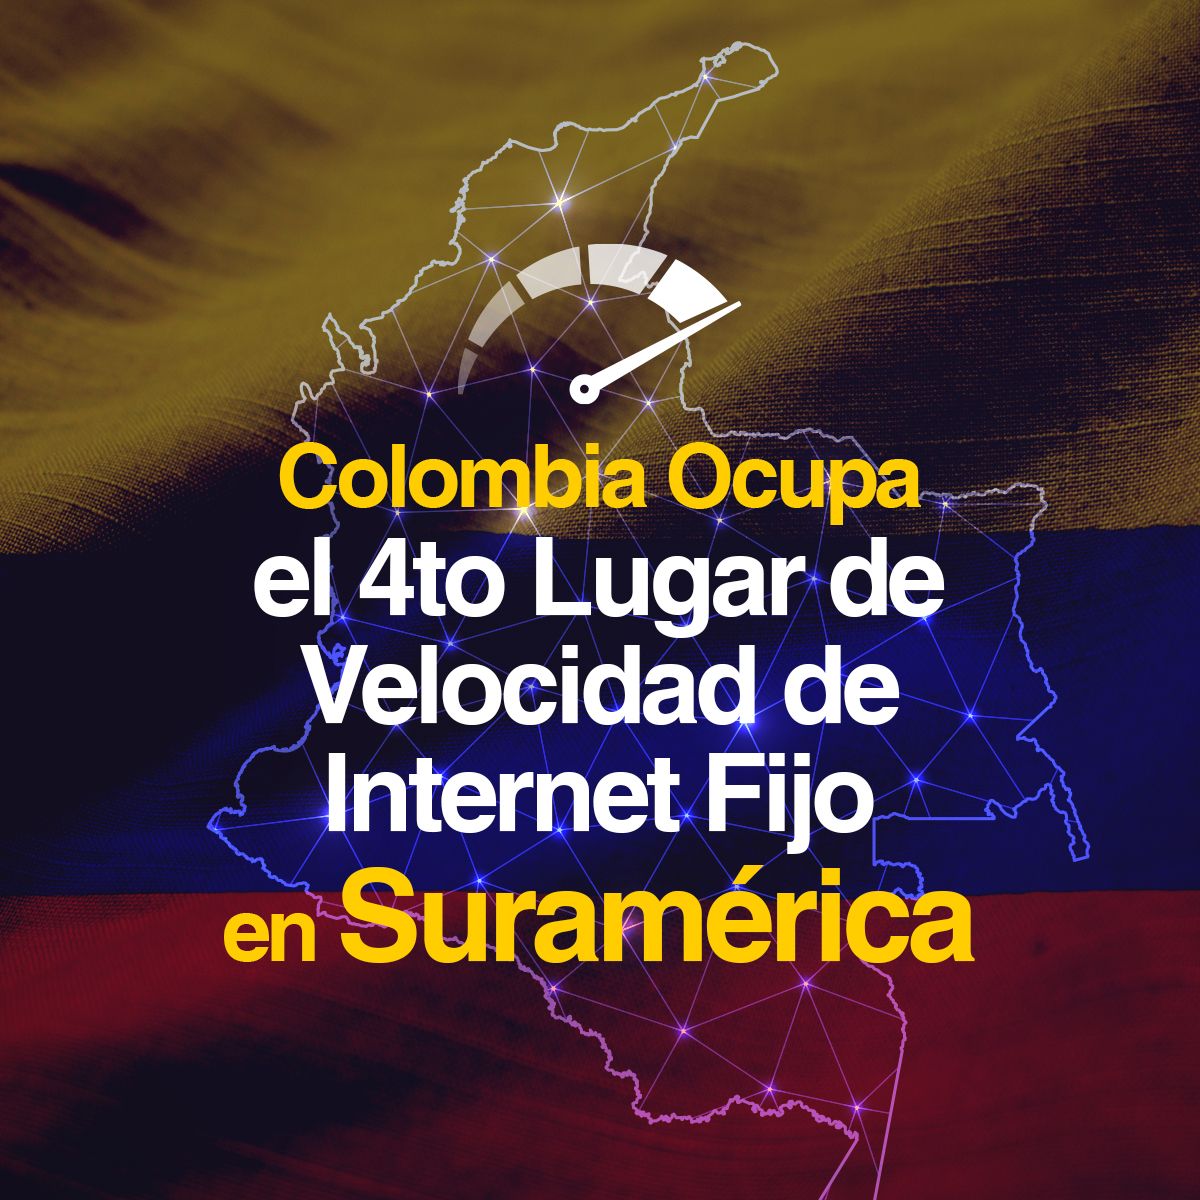 Colombia Ocupa el 4to Lugar de Velocidad de Internet Fijo en Suramérica